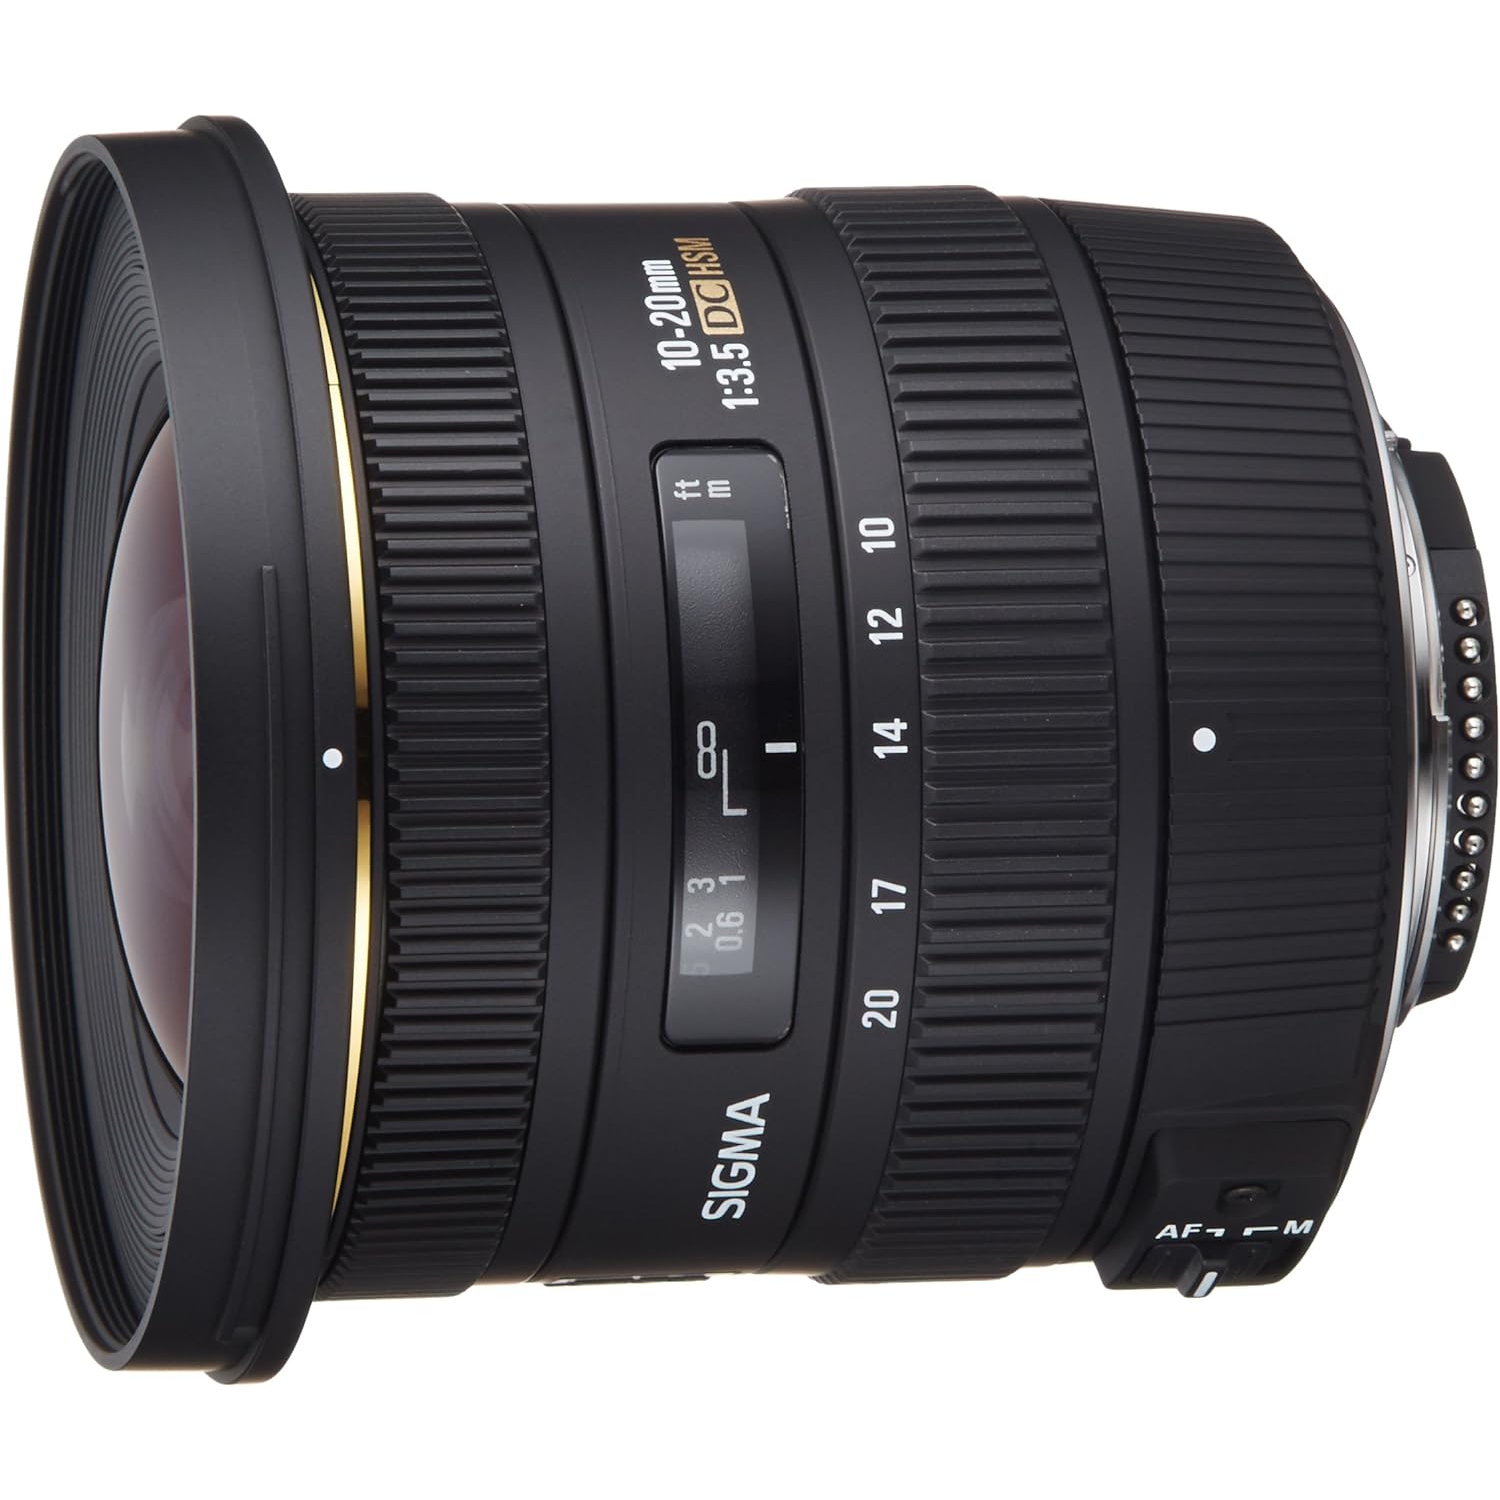 Refurbished (Good) - Sigma 10-20mm f/3.5 EX DC HSM ELD SLD Aspherical Super Wide Angle Lens for Nikon Digital SLR Cameras